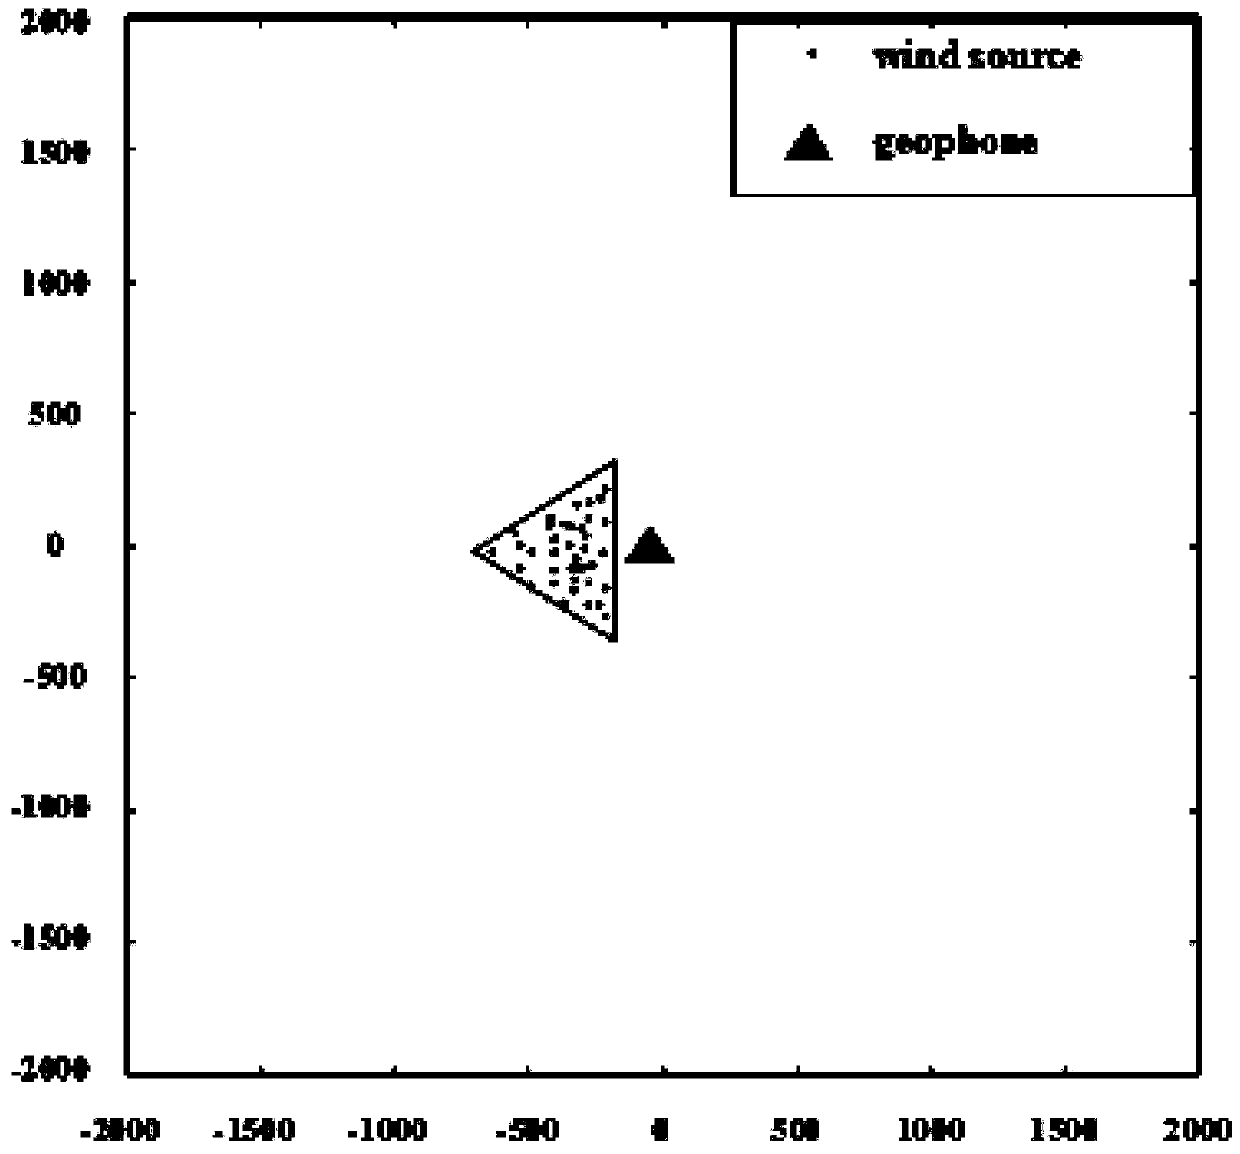 Desert seismic exploration random noise eliminating method based on noise modeling analysis